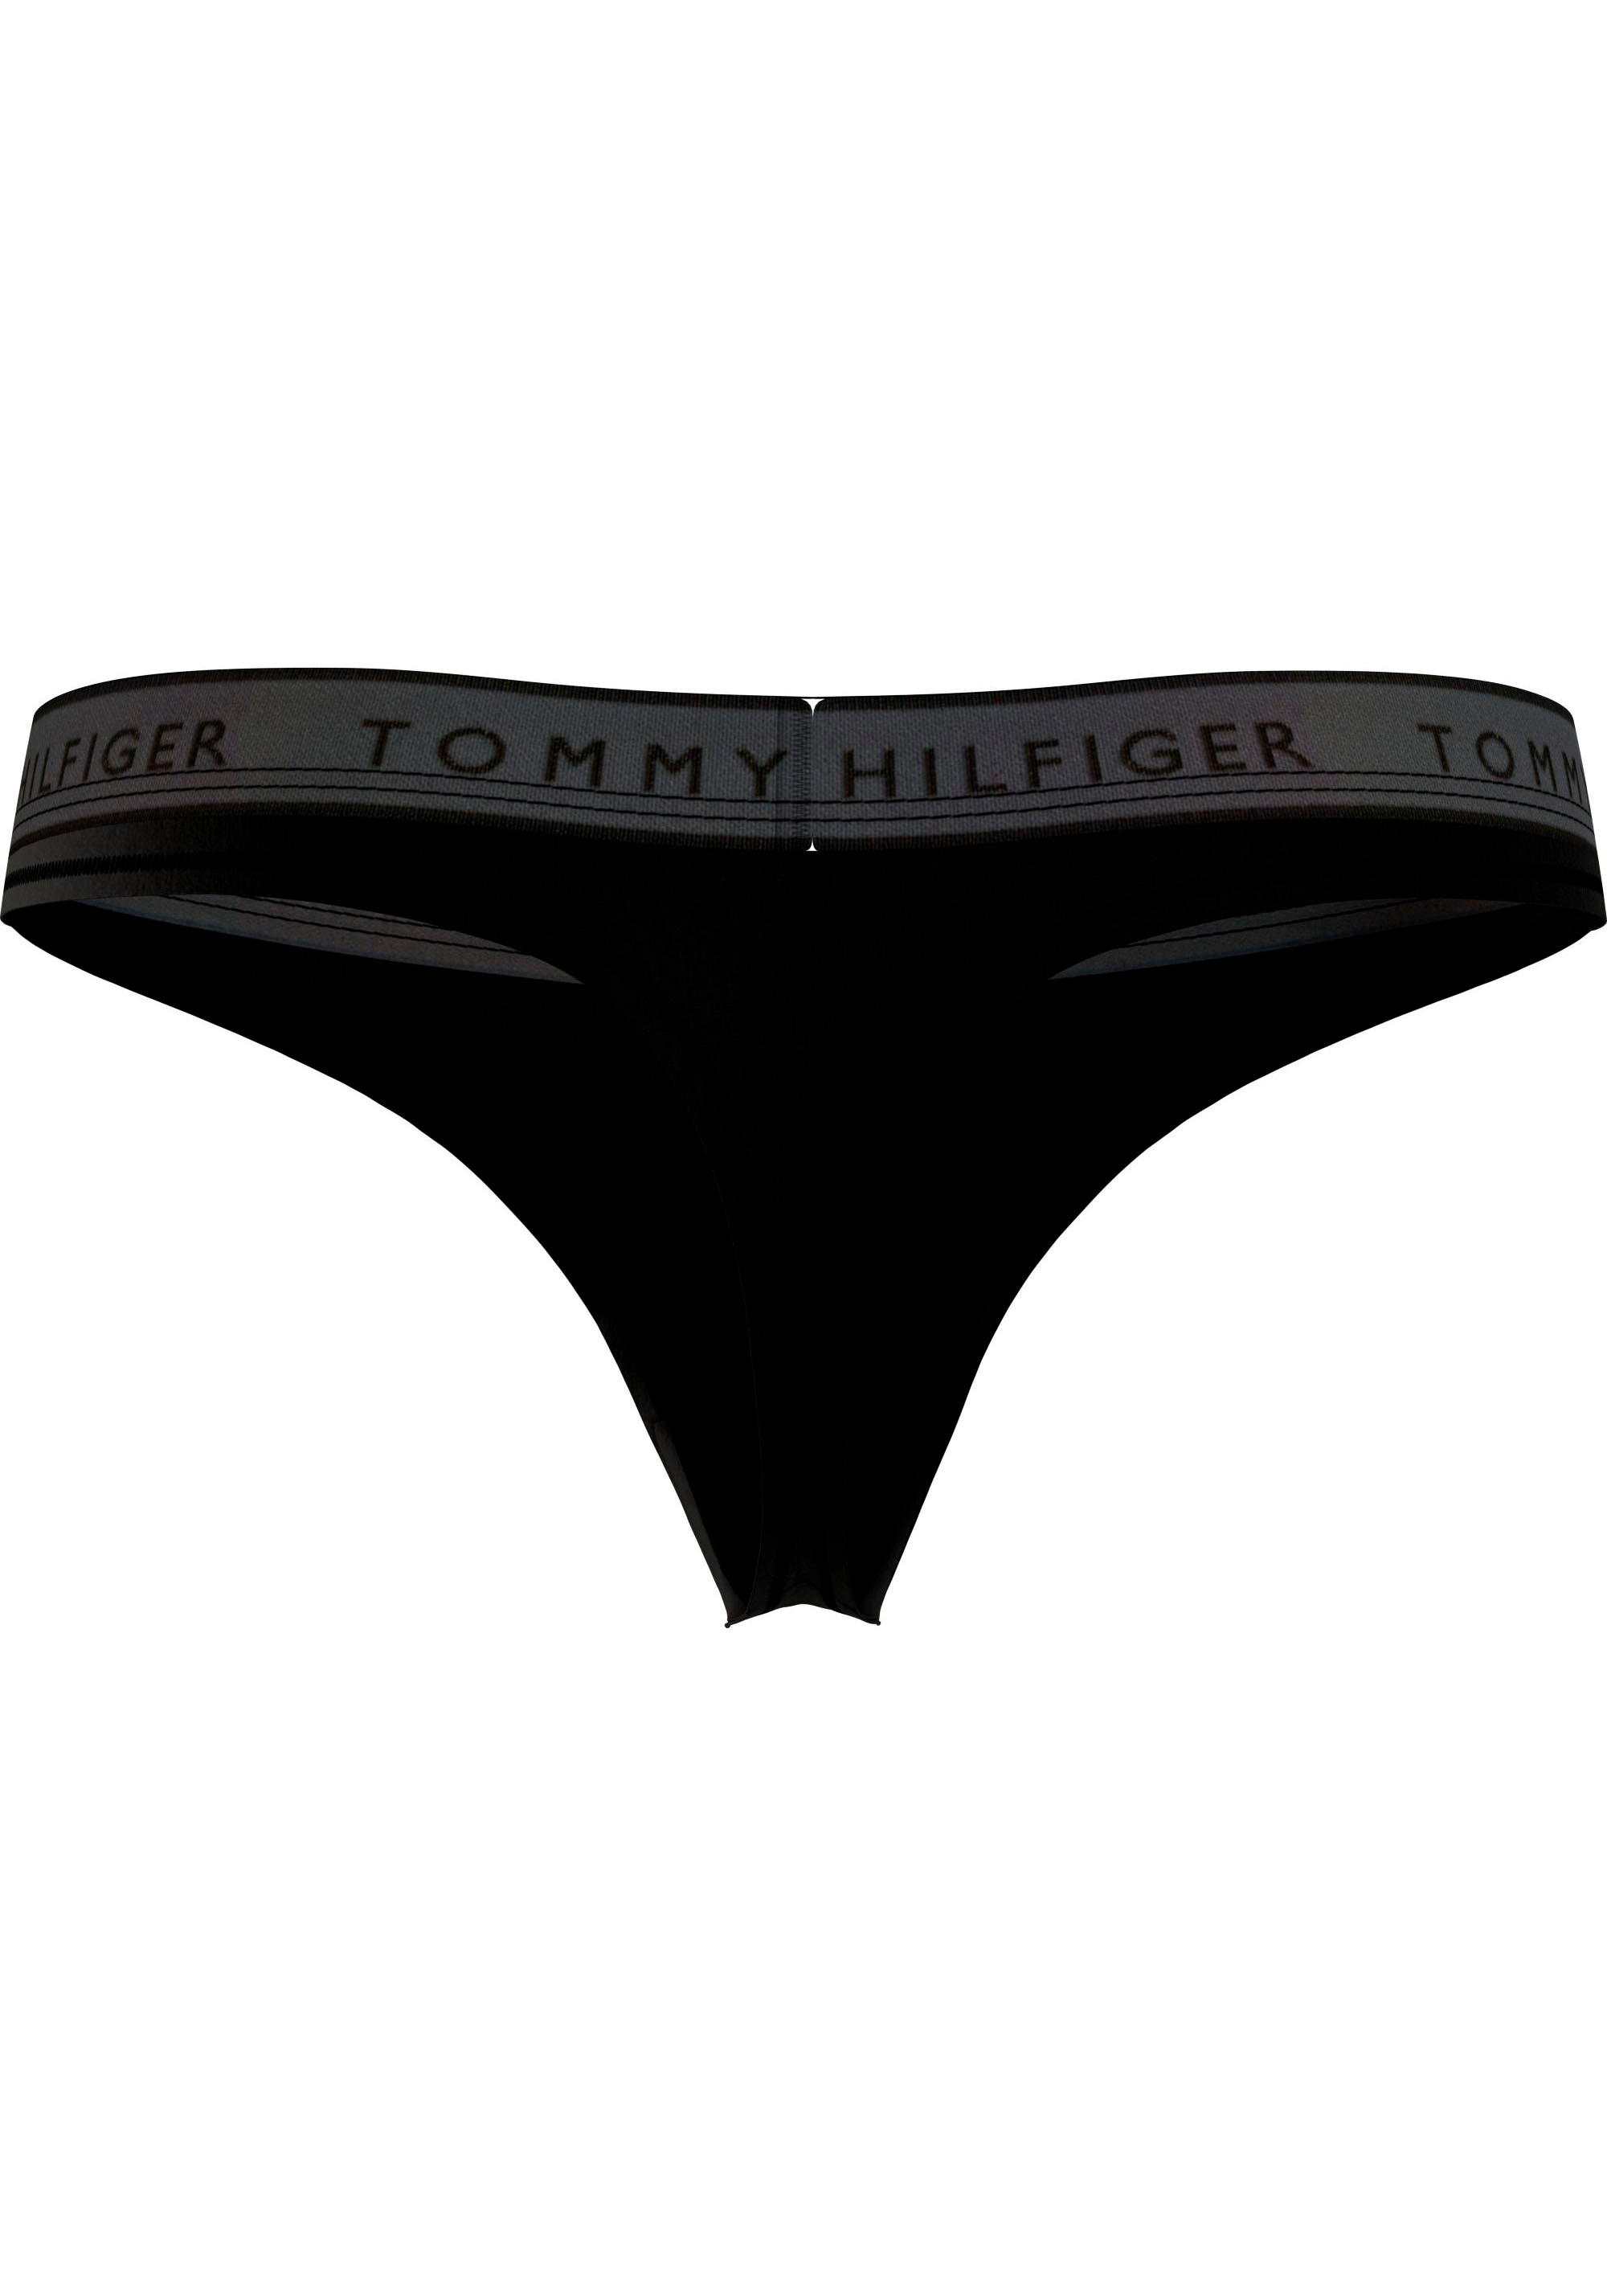 ♕ Logobund Underwear (EXT auf Hilfiger Tommy »THONG SIZES)«, Hilfiger versandkostenfrei Tommy String mit